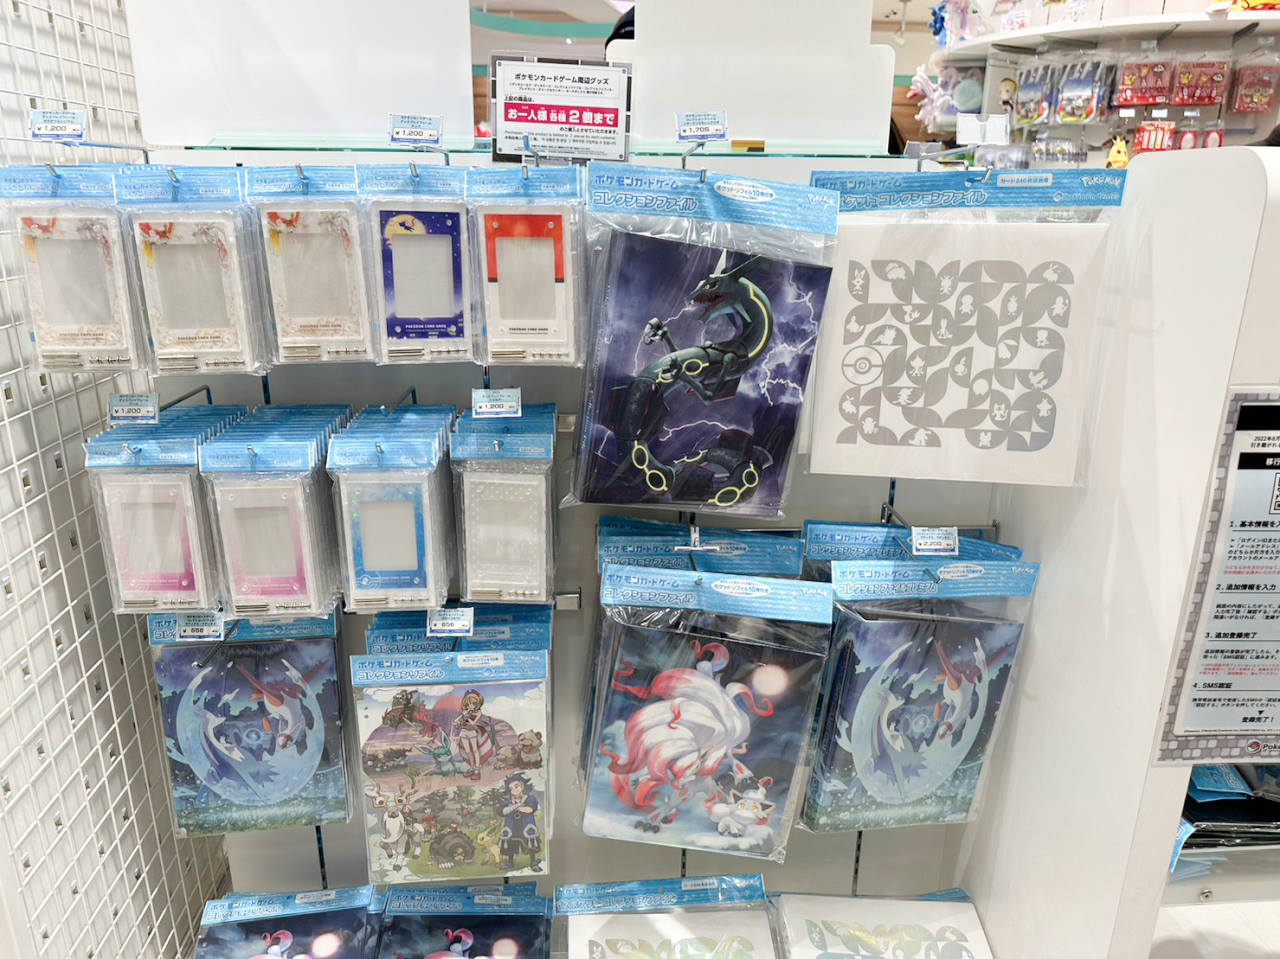 札幌寶可夢中心Pokémon Center Sapporo，來找北海道限定商品吧！位於JR札幌車站大丸百貨8樓